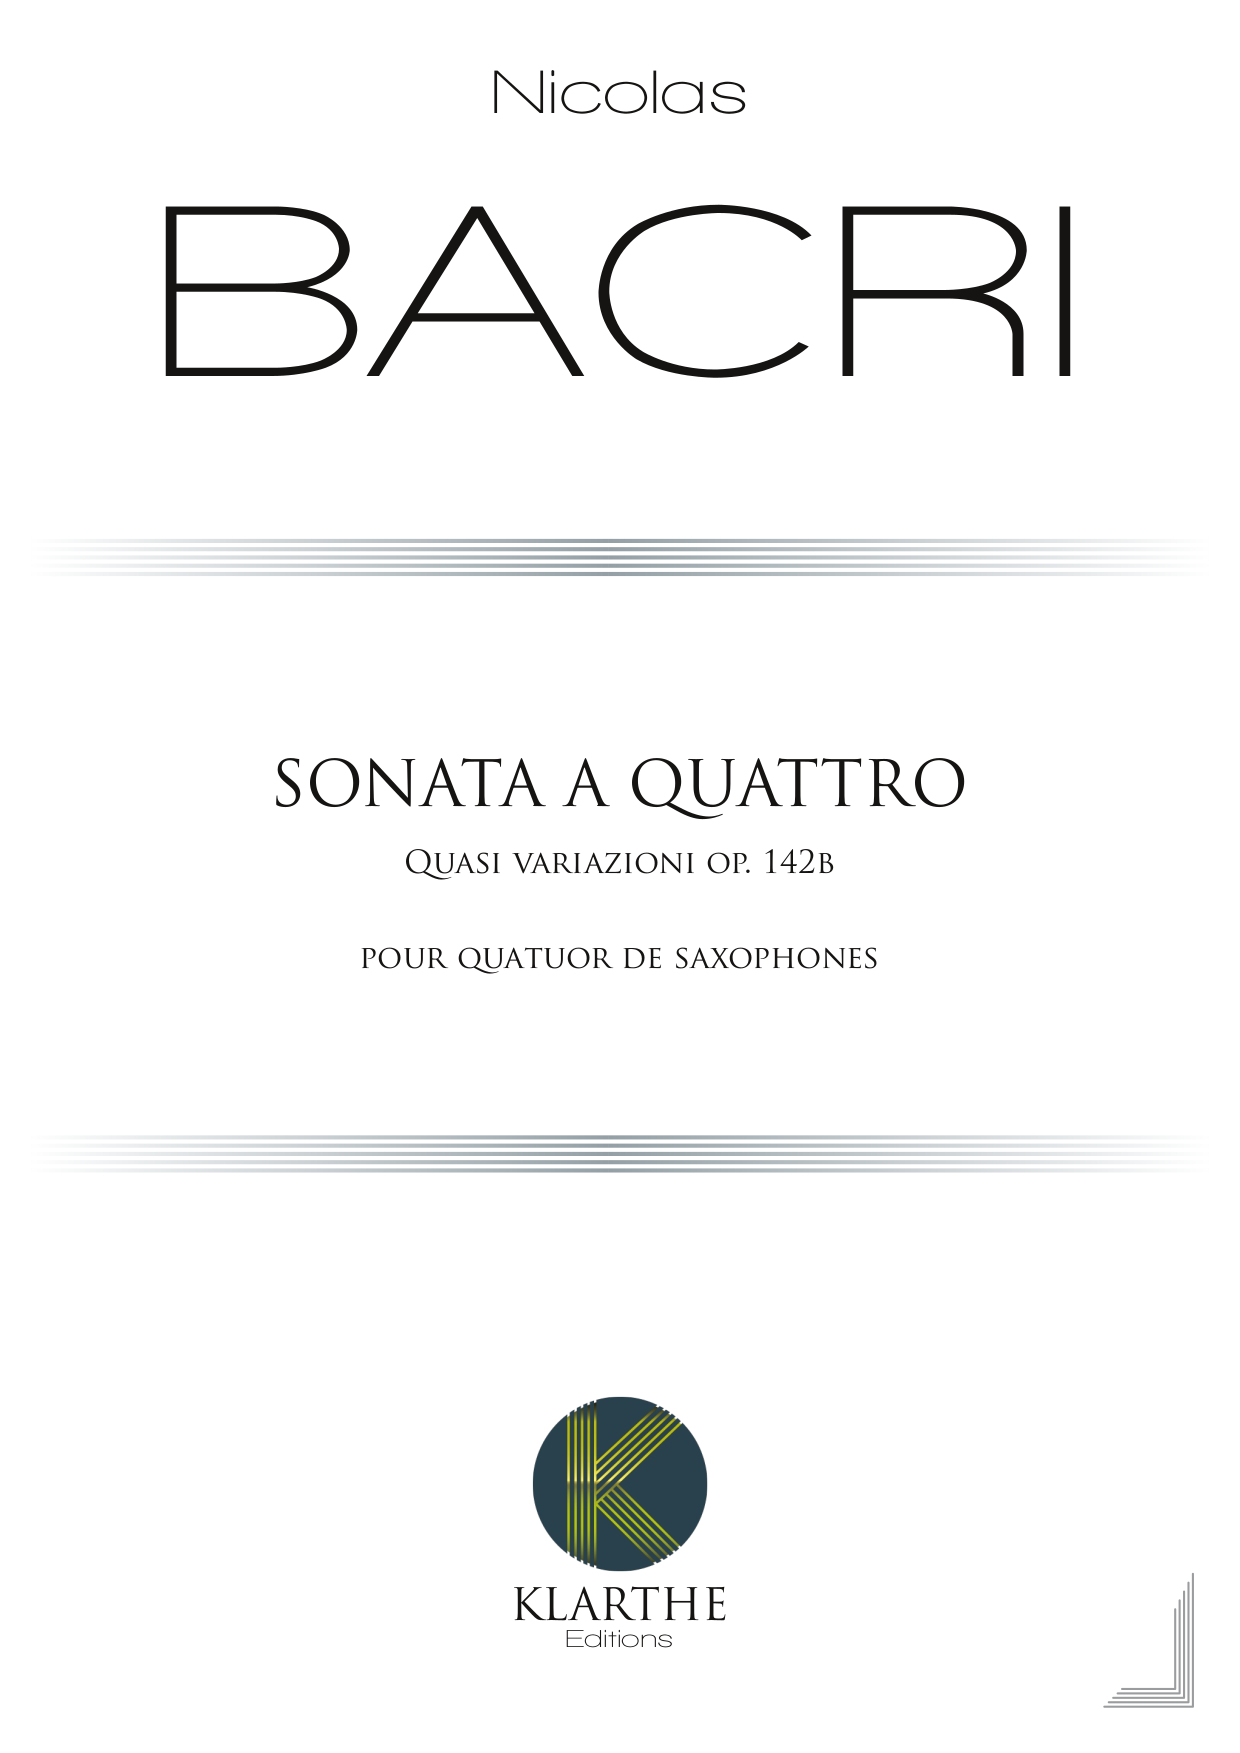 Sonata a quattro (BACRI NICOLAS)